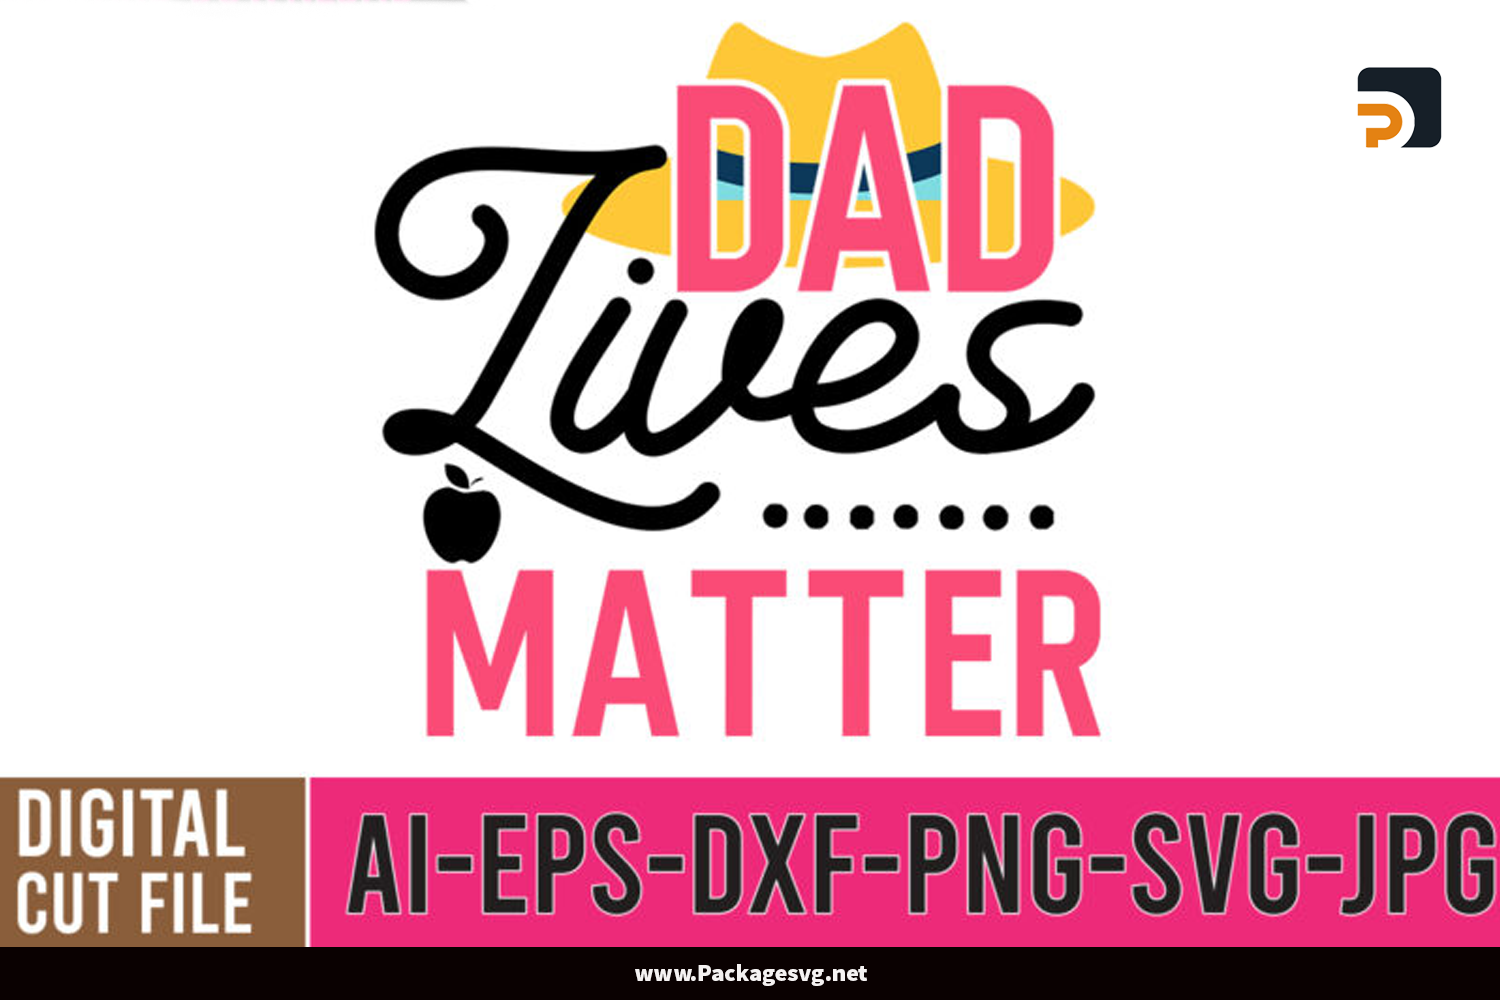 Dad lives matter SVG EPS PNG JPG DXF AI